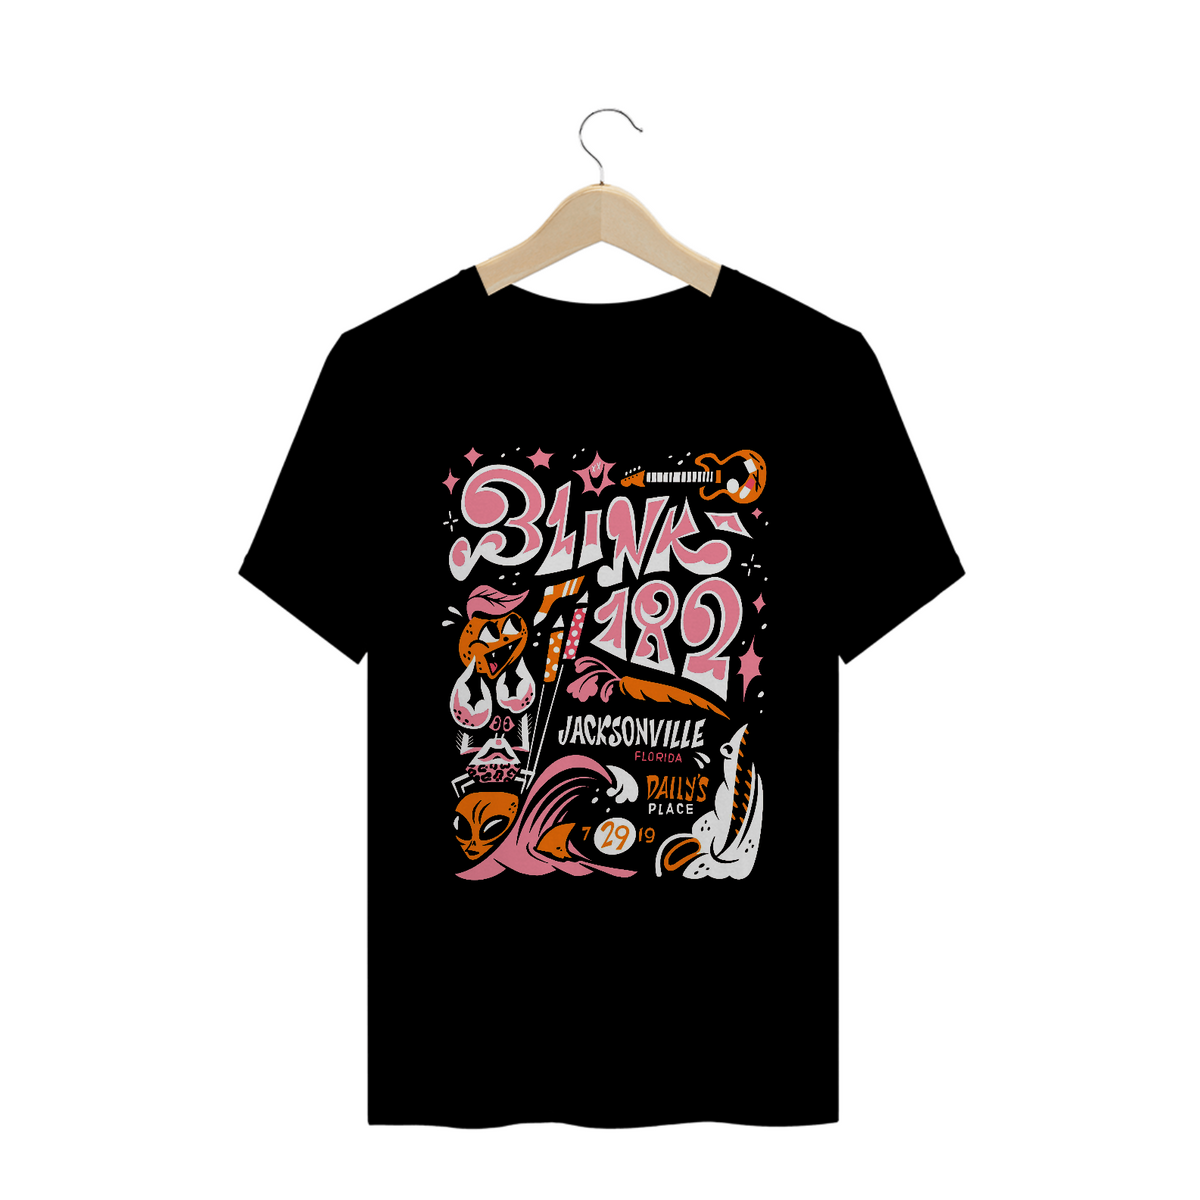 Nome do produto: Camisa Blink-182 - Jacksonville 2019